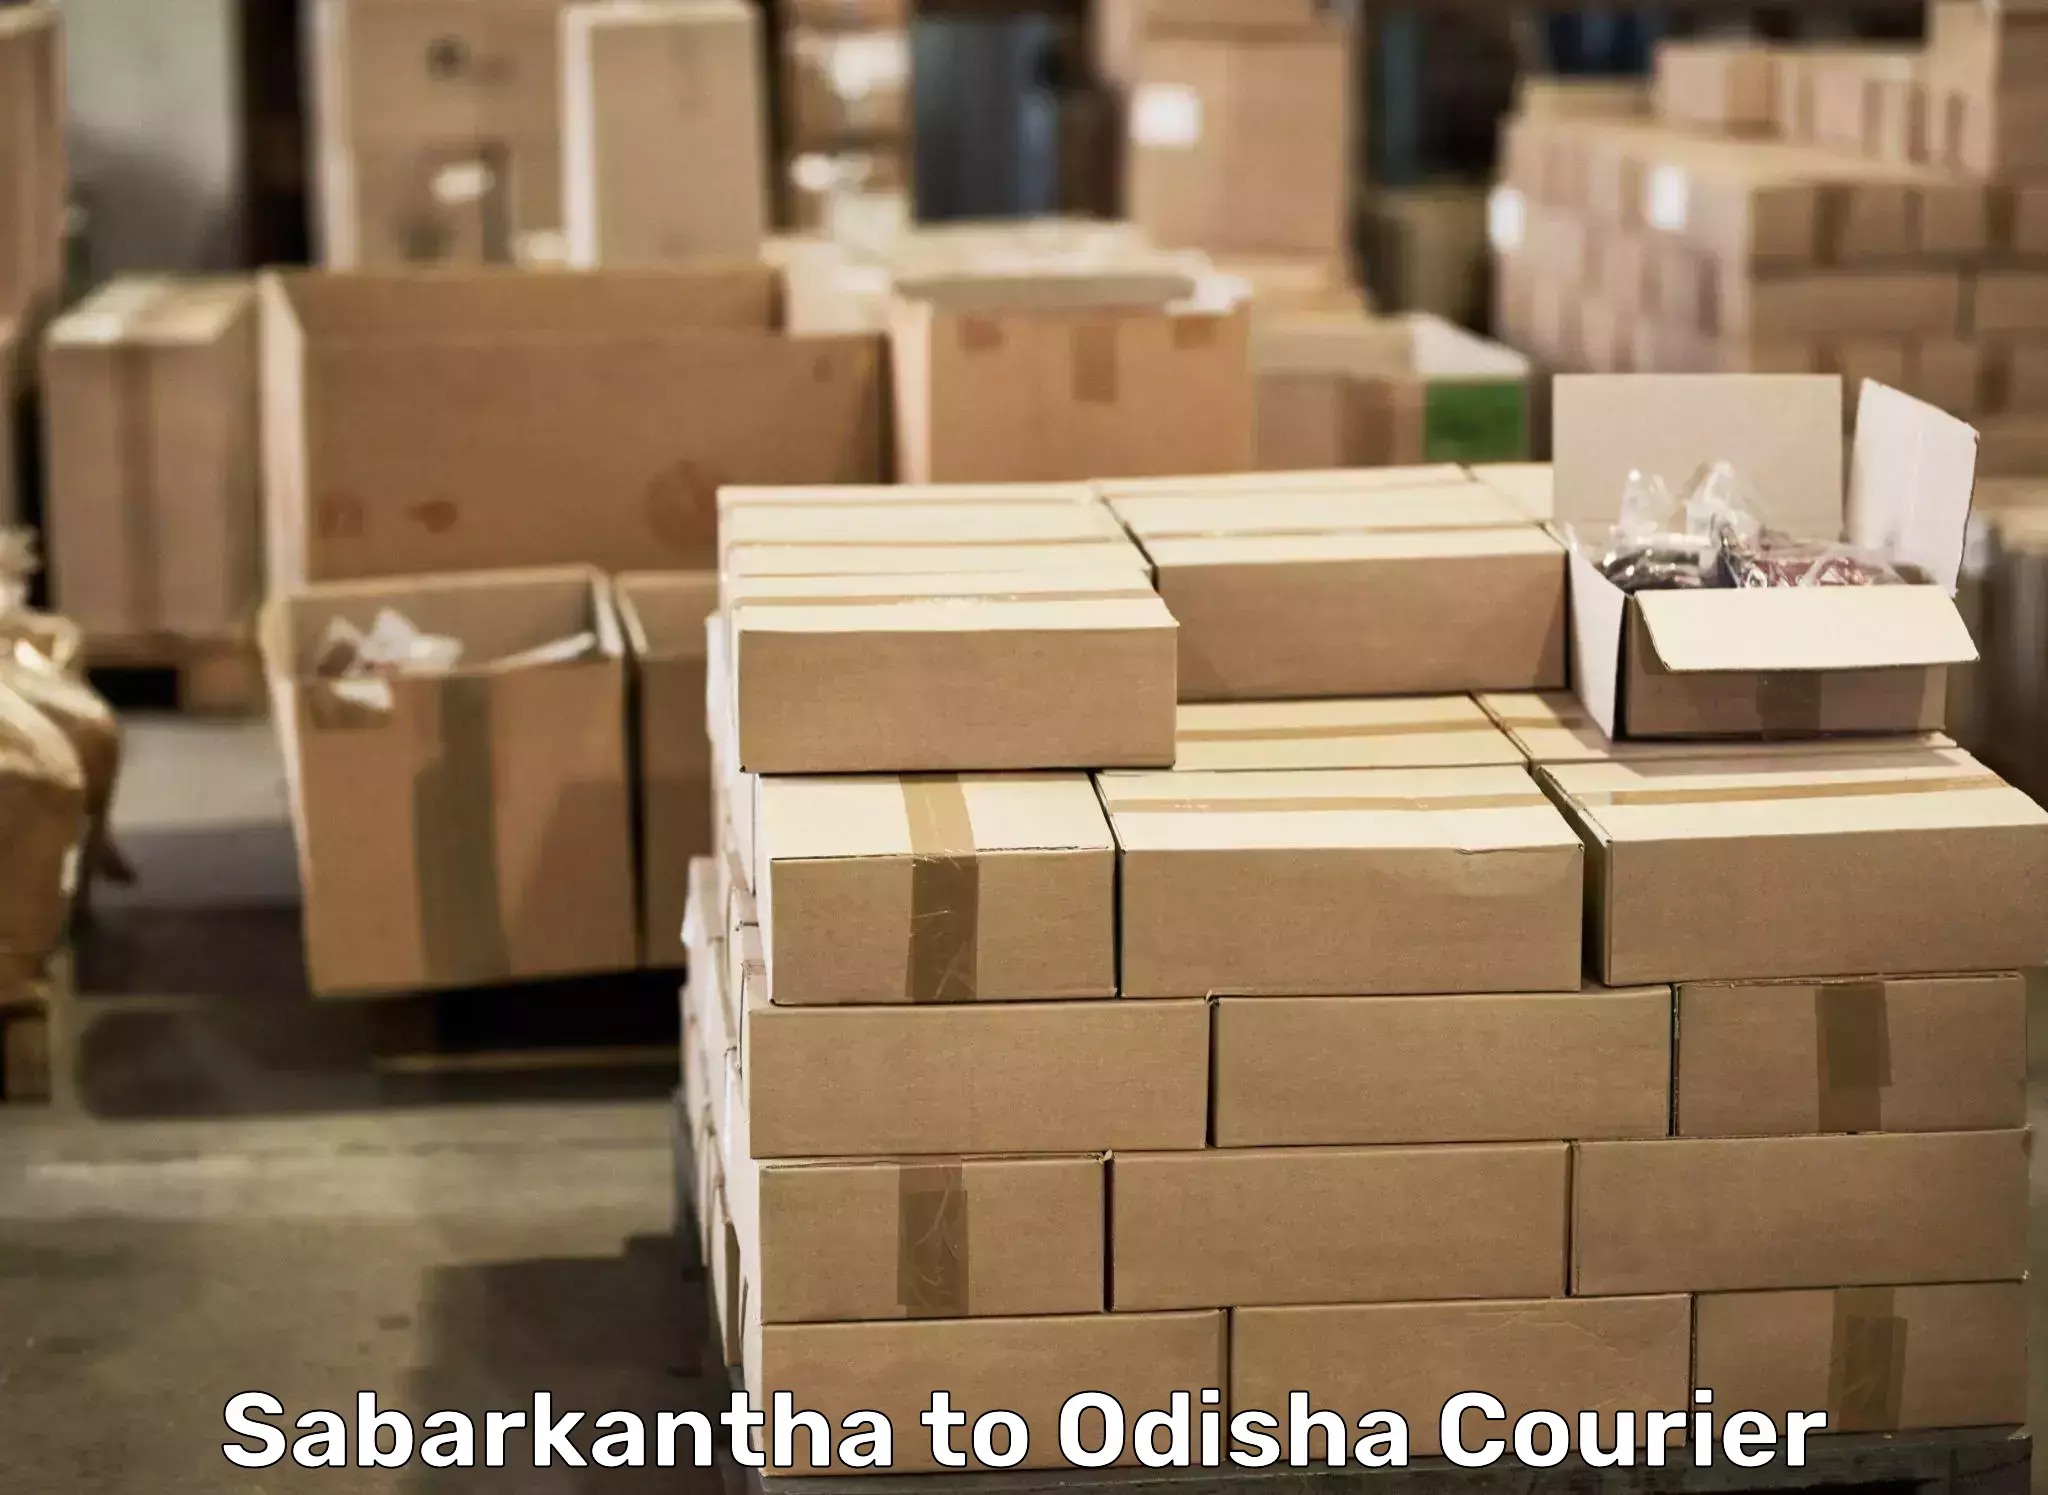 Furniture moving plans Sabarkantha to Pipili